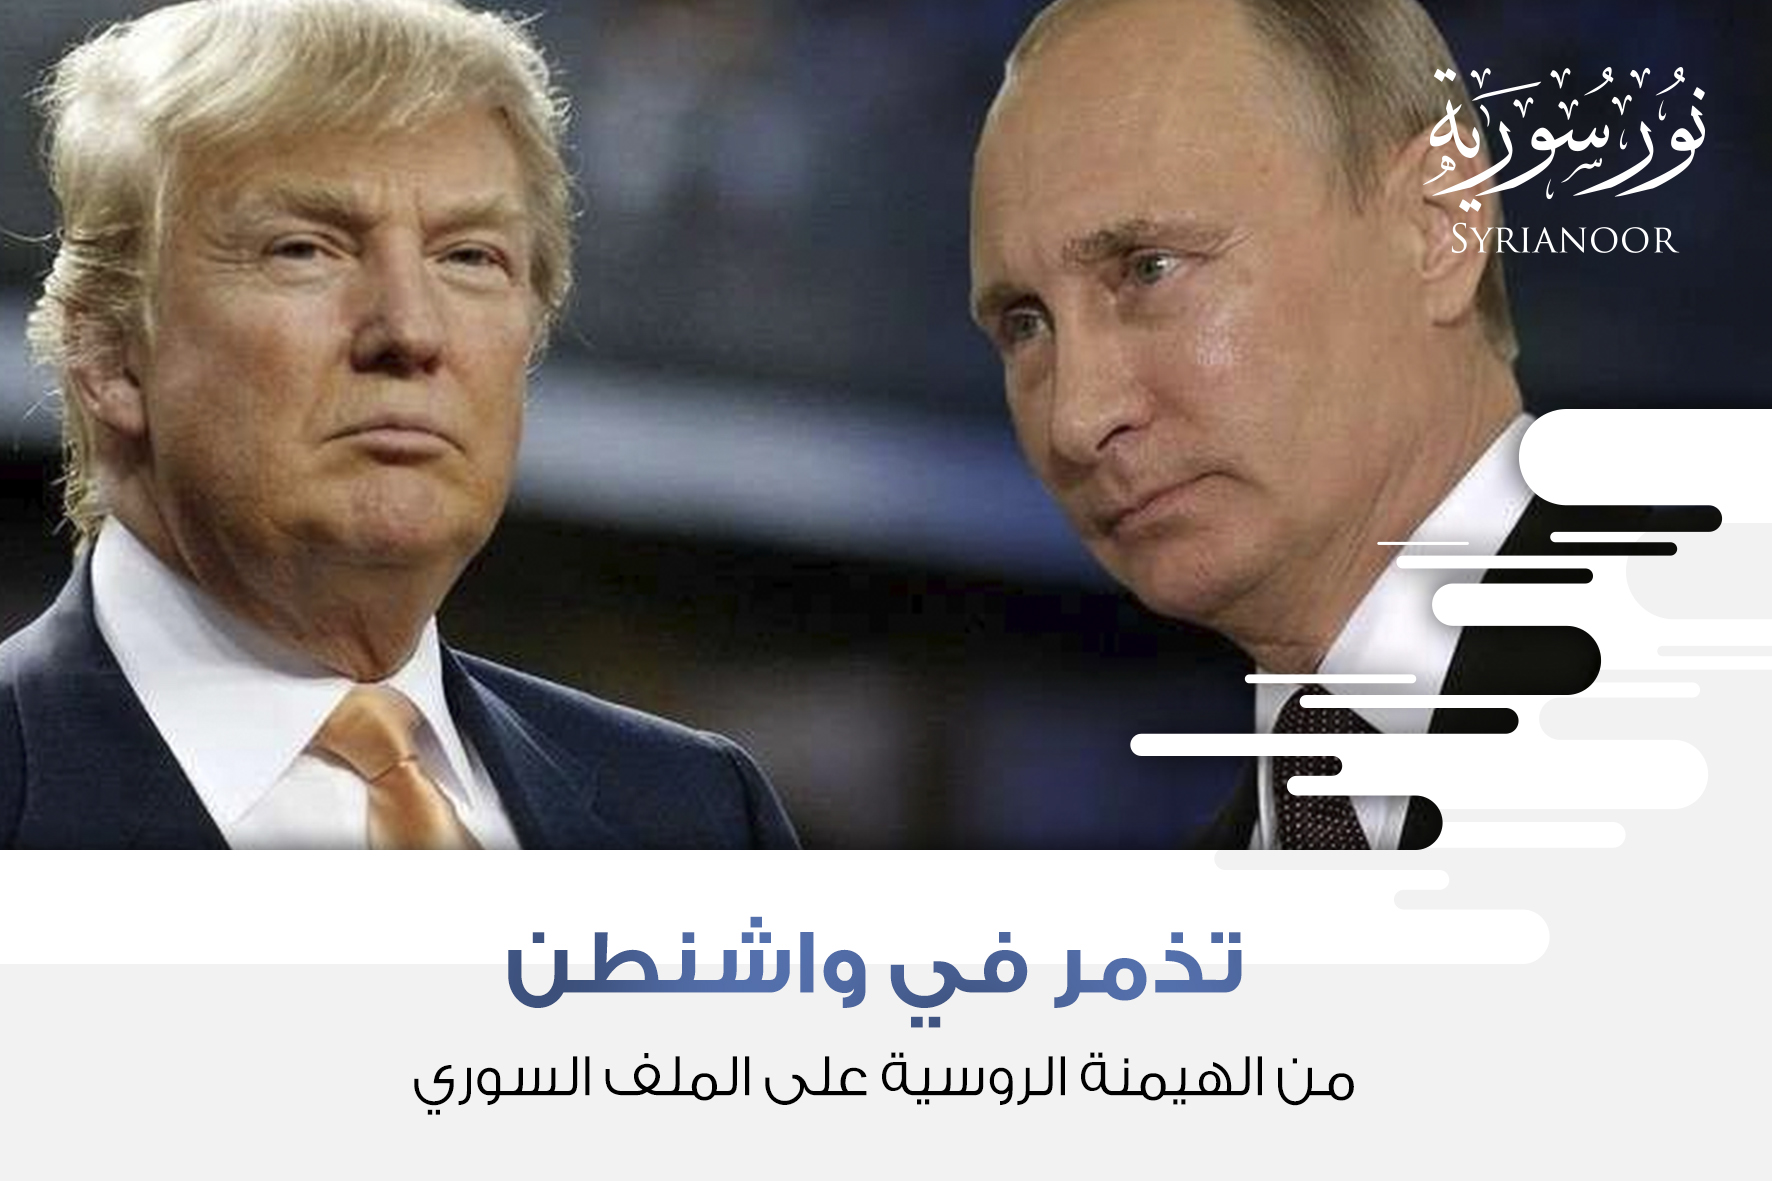 تذمر في واشنطن من الهيمنة الروسية على الملف السوري